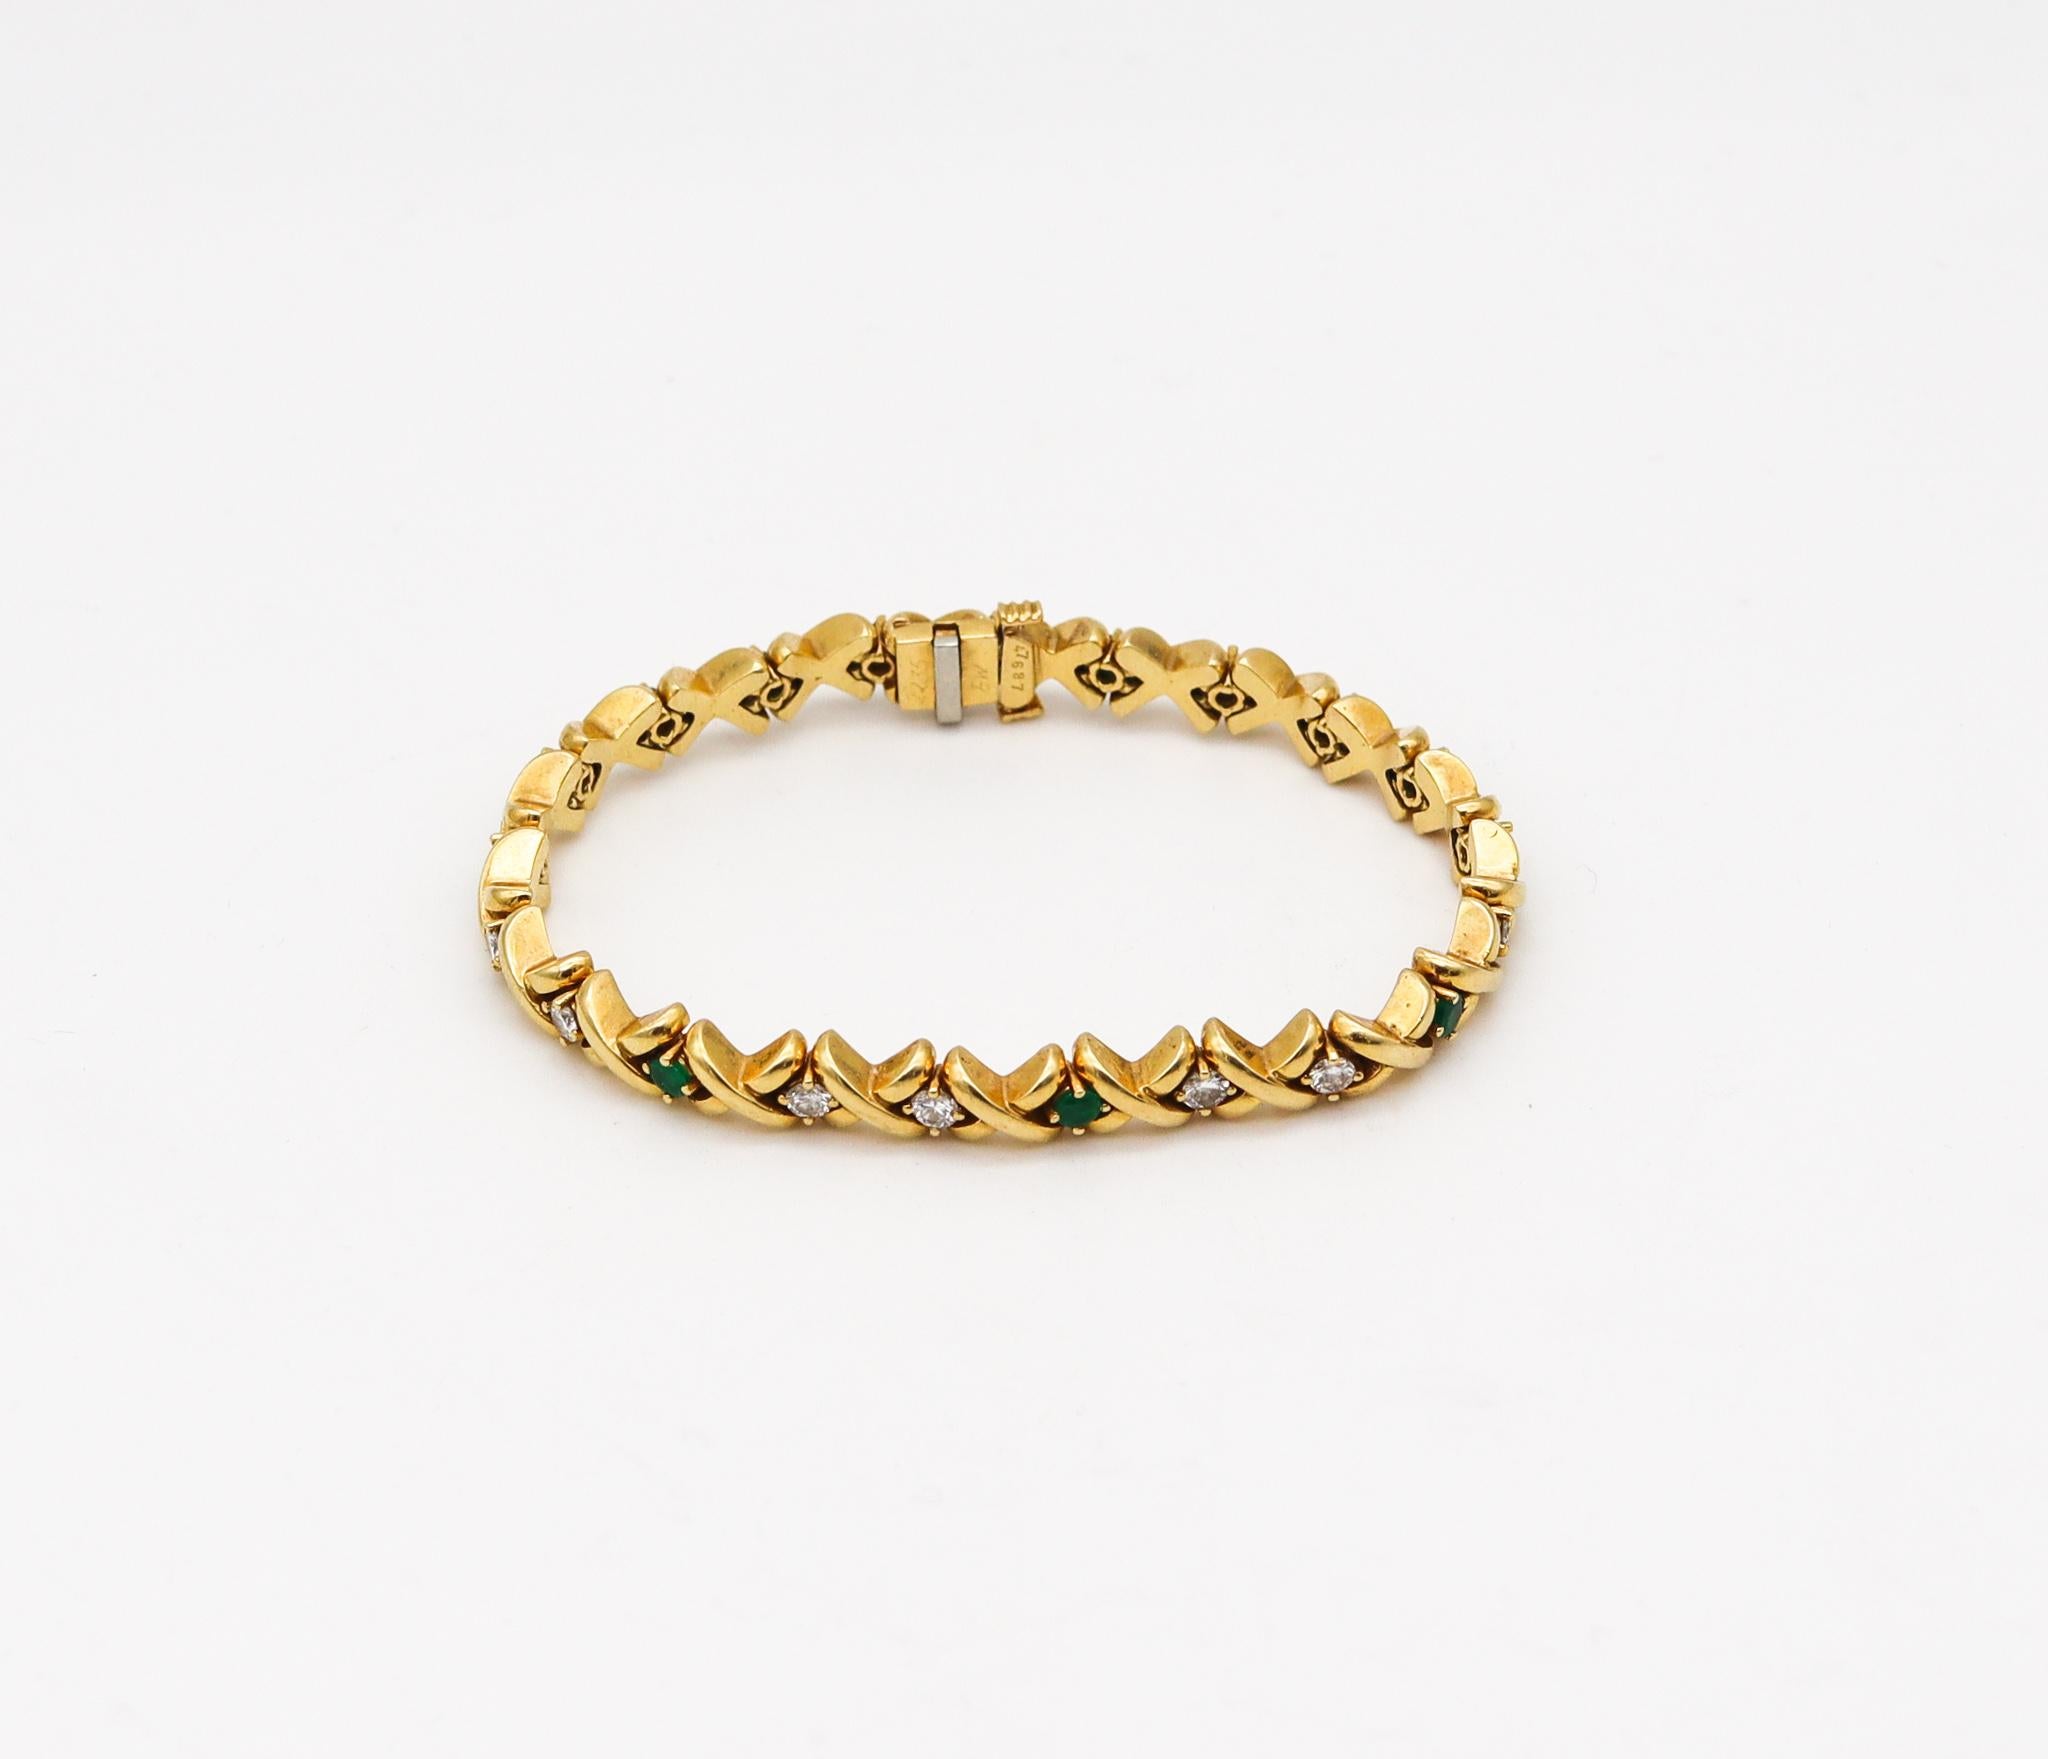 Bracelet Riviera conçu par Tiffany & Co.

Un bracelet coloré en pierres de la Riviera, créé par Tiffany & Co. Cette pièce a été réalisée avec les motifs emblématiques du x en or jaune massif de 18 carats avec une finition hautement polie. Équipé